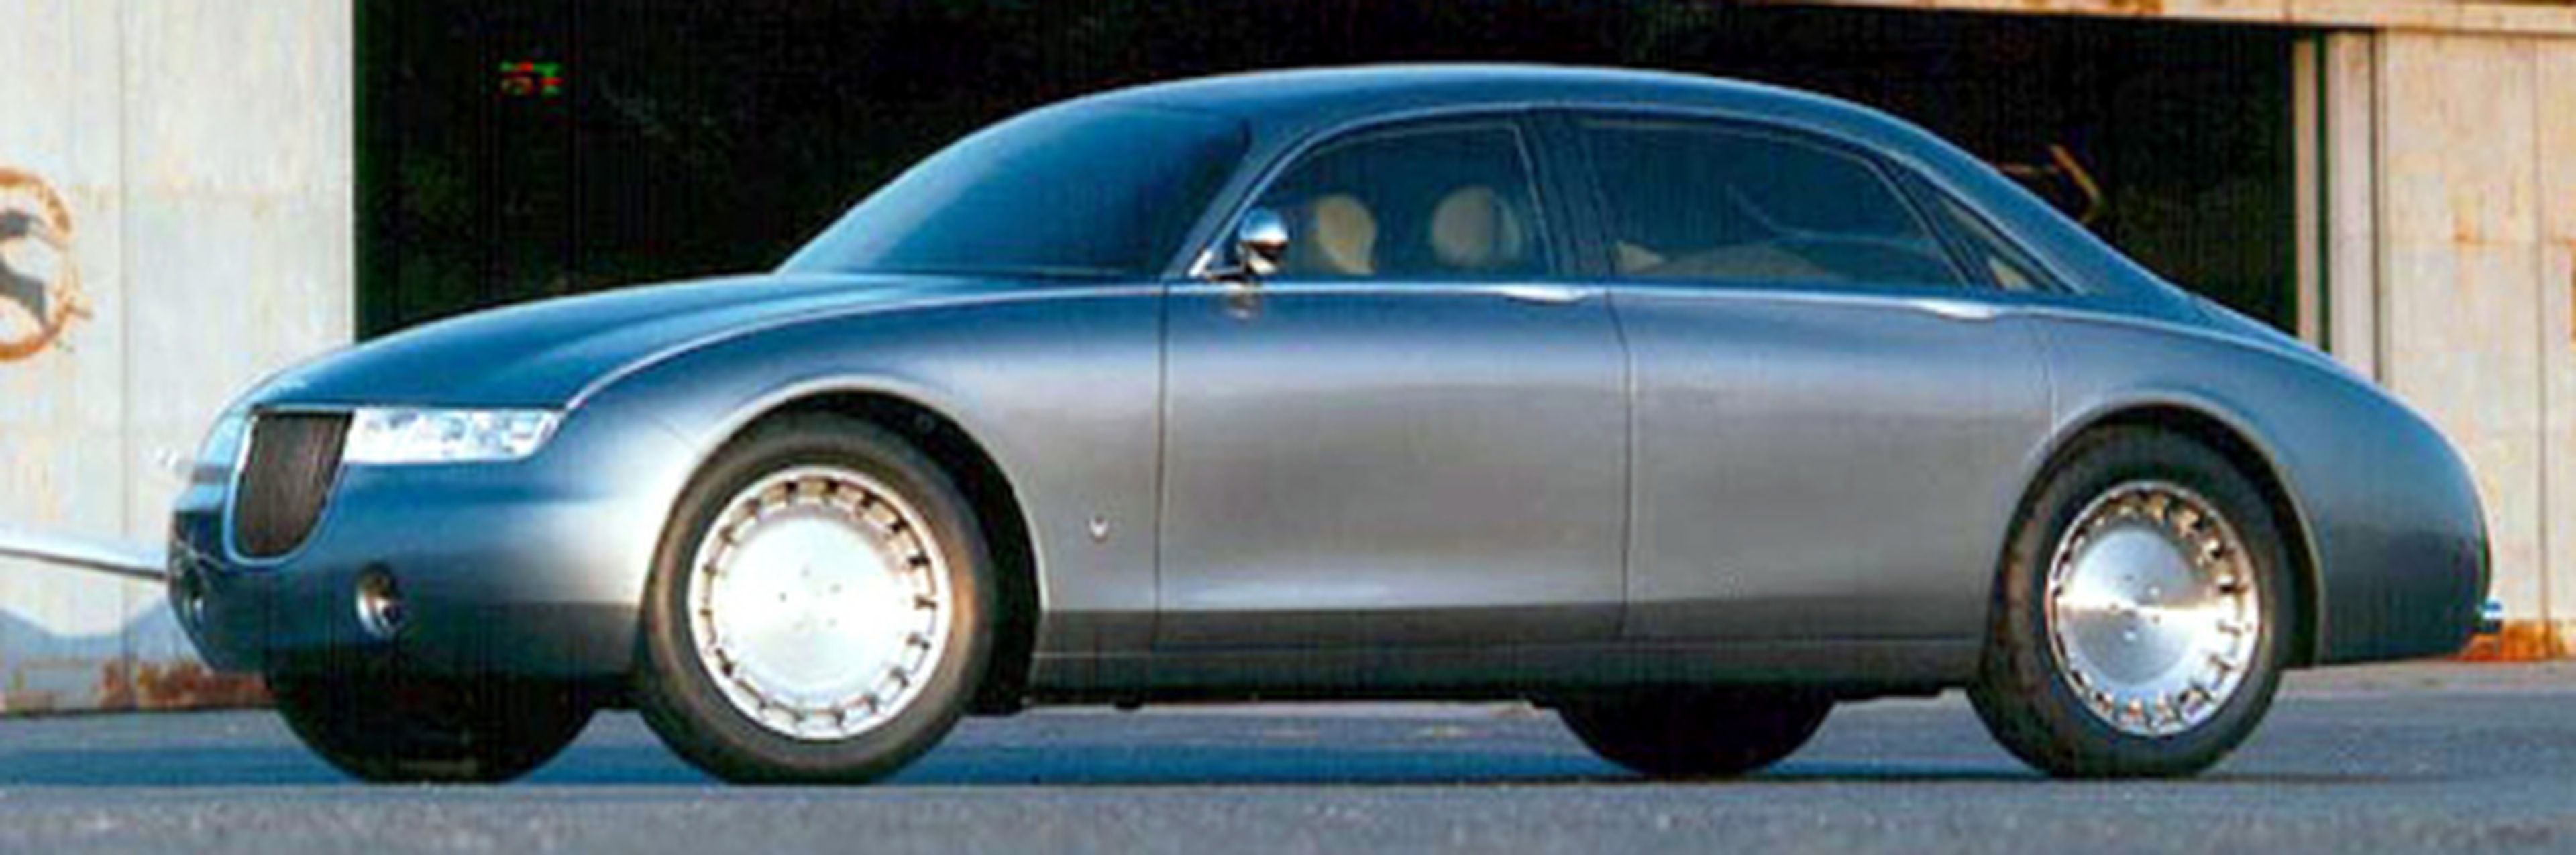 El nuevo Aston Martin Lagonda, cazado en los tests